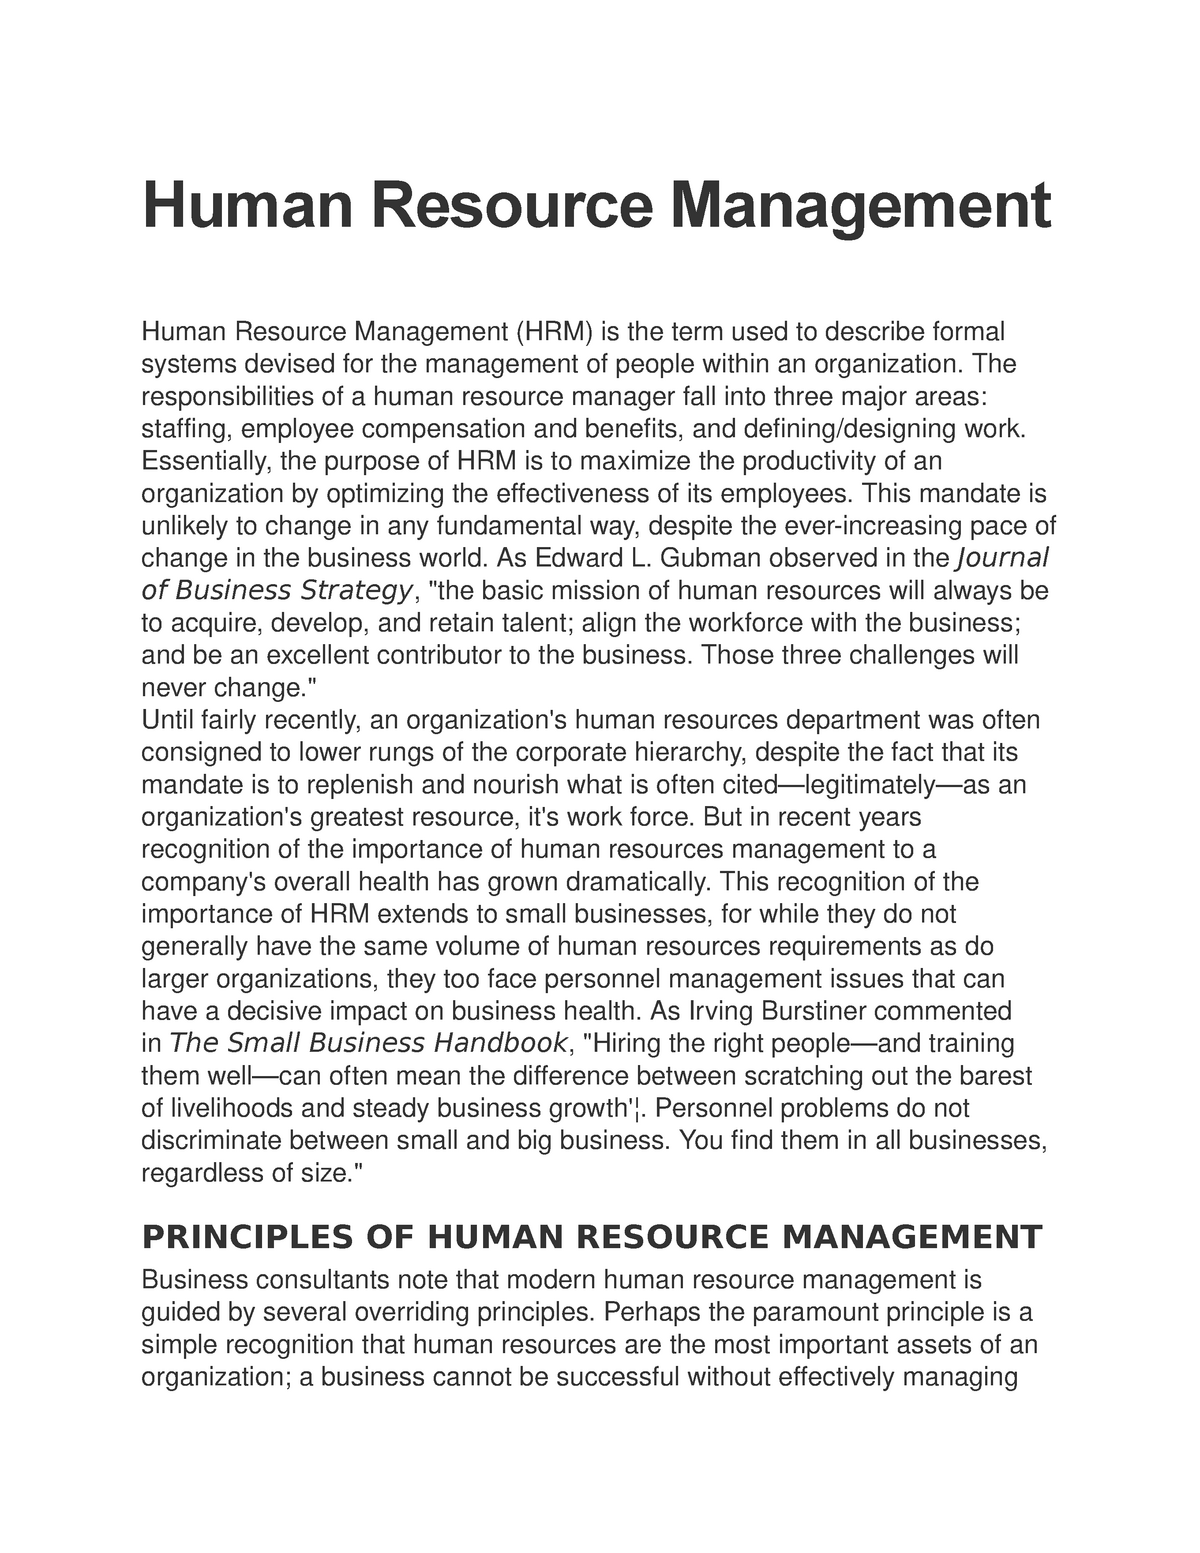 dissertation in human resource management